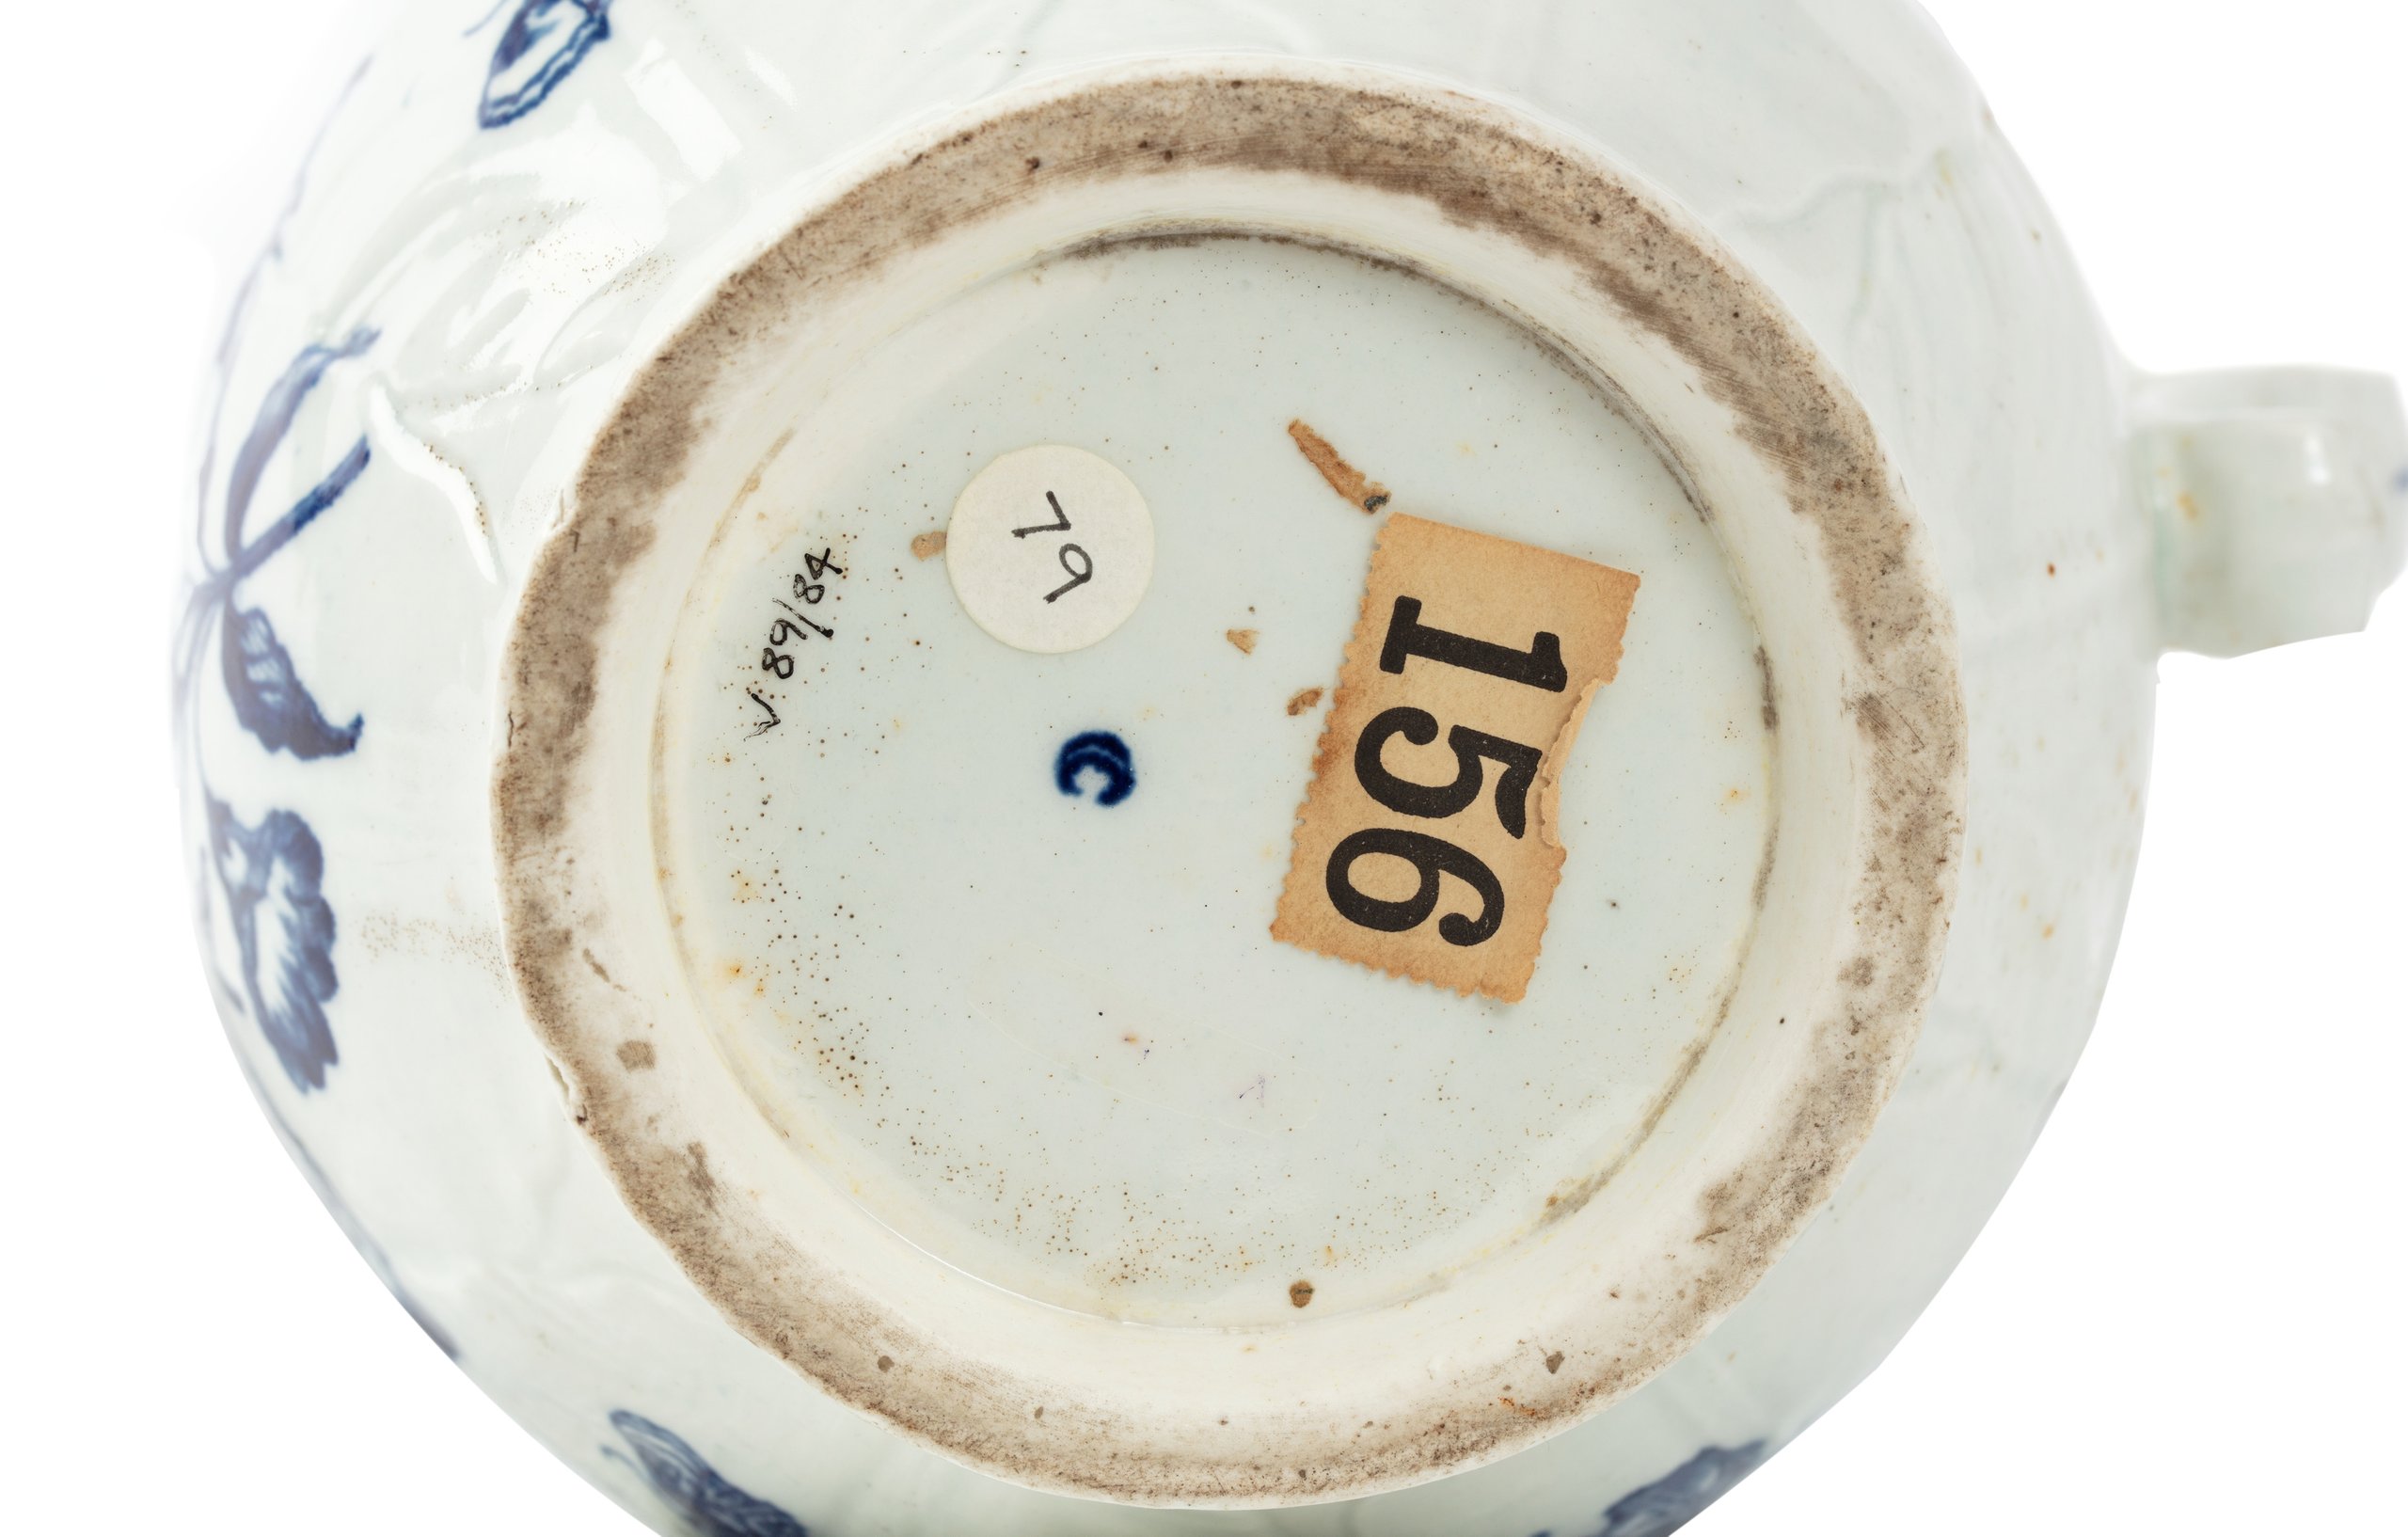 Royal Worcester porcelain jug